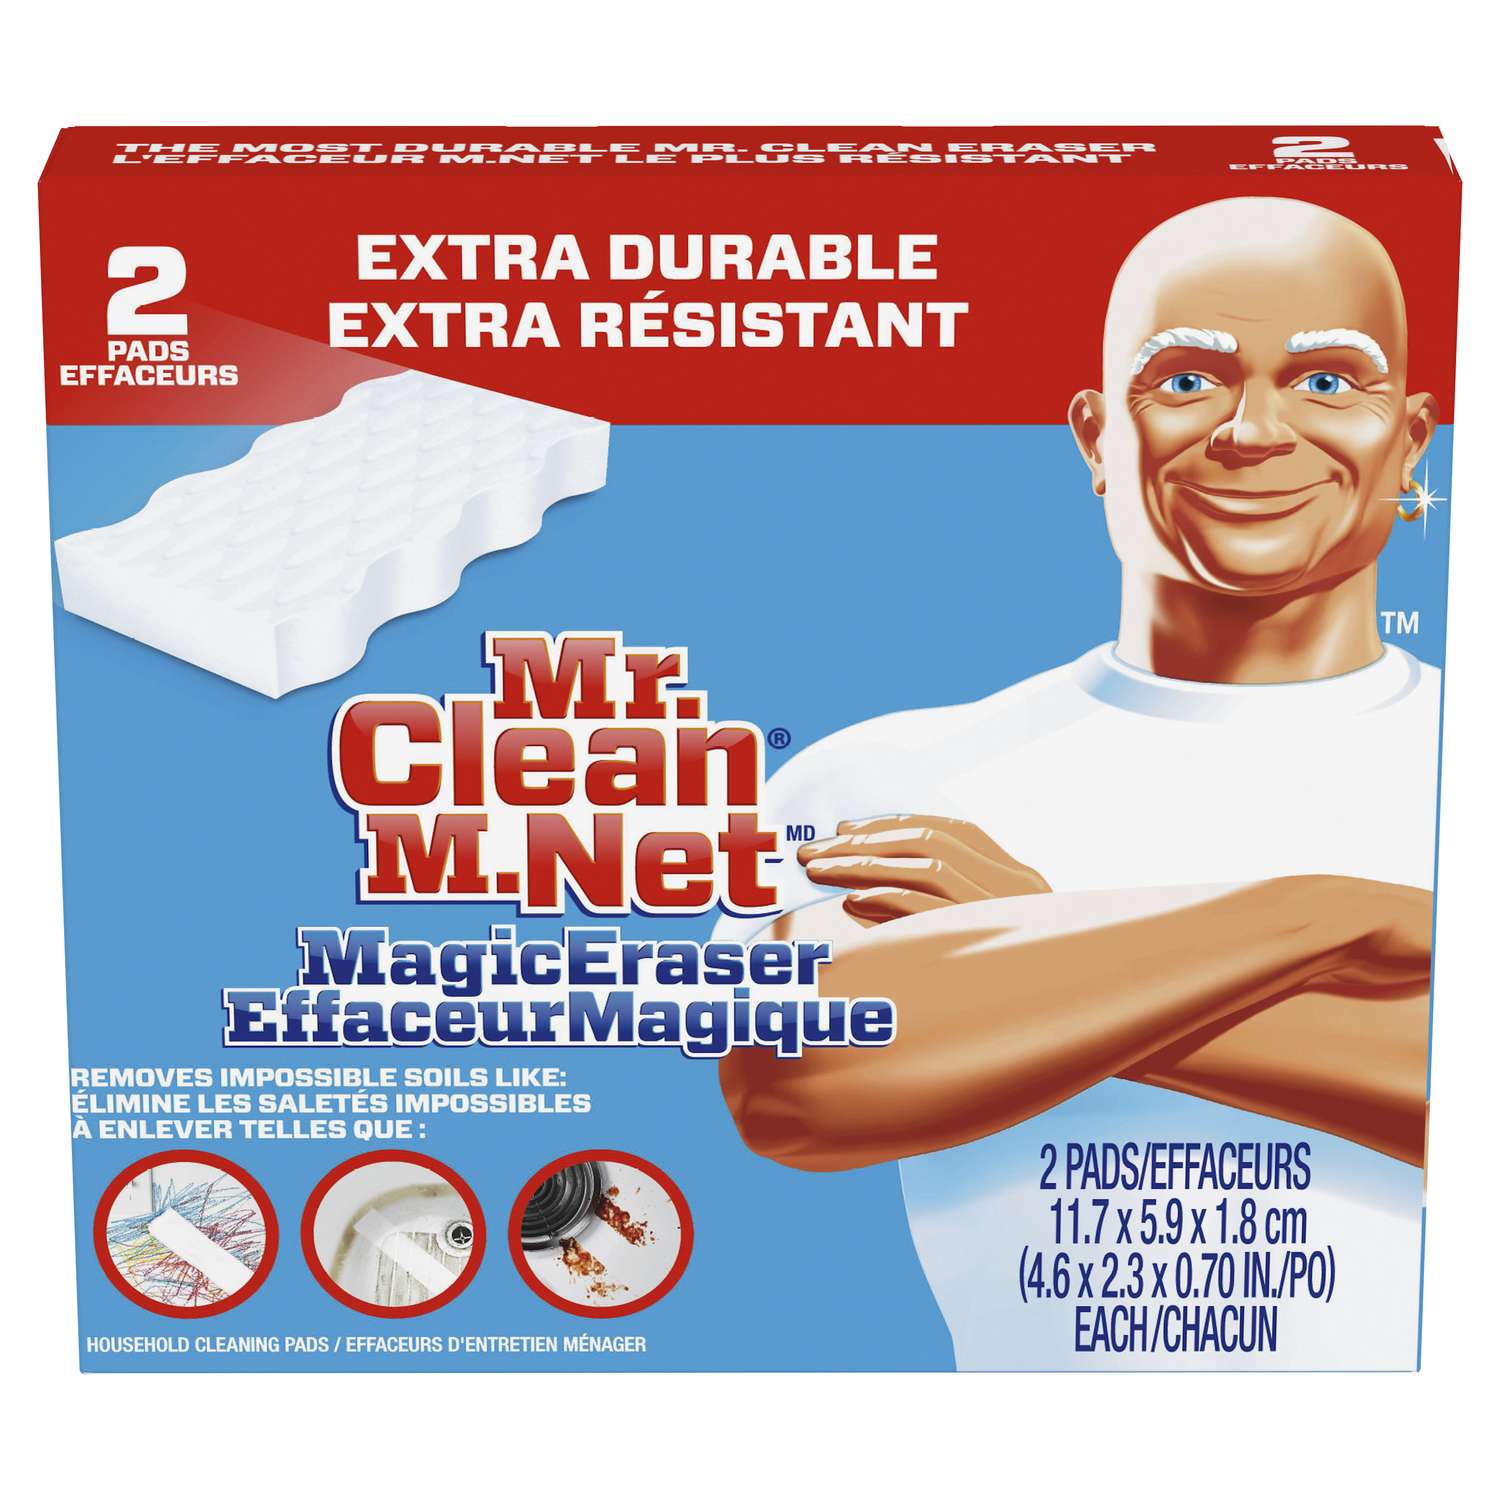 Hãy tìm hiểu về siêu vật liệu làm sạch Mr. Clean Xtra power Heavy Duty Magic Eraser đa năng! Được trang bị công nghệ tiên tiến, sản phẩm này có thể làm sạch các vết bẩn khó nhất mà không để lại vết trầy xước trên bề mặt. Tận dụng sức mạnh của Mr. Clean và trải nghiệm điều kỳ diệu khi sử dụng sản phẩm này!